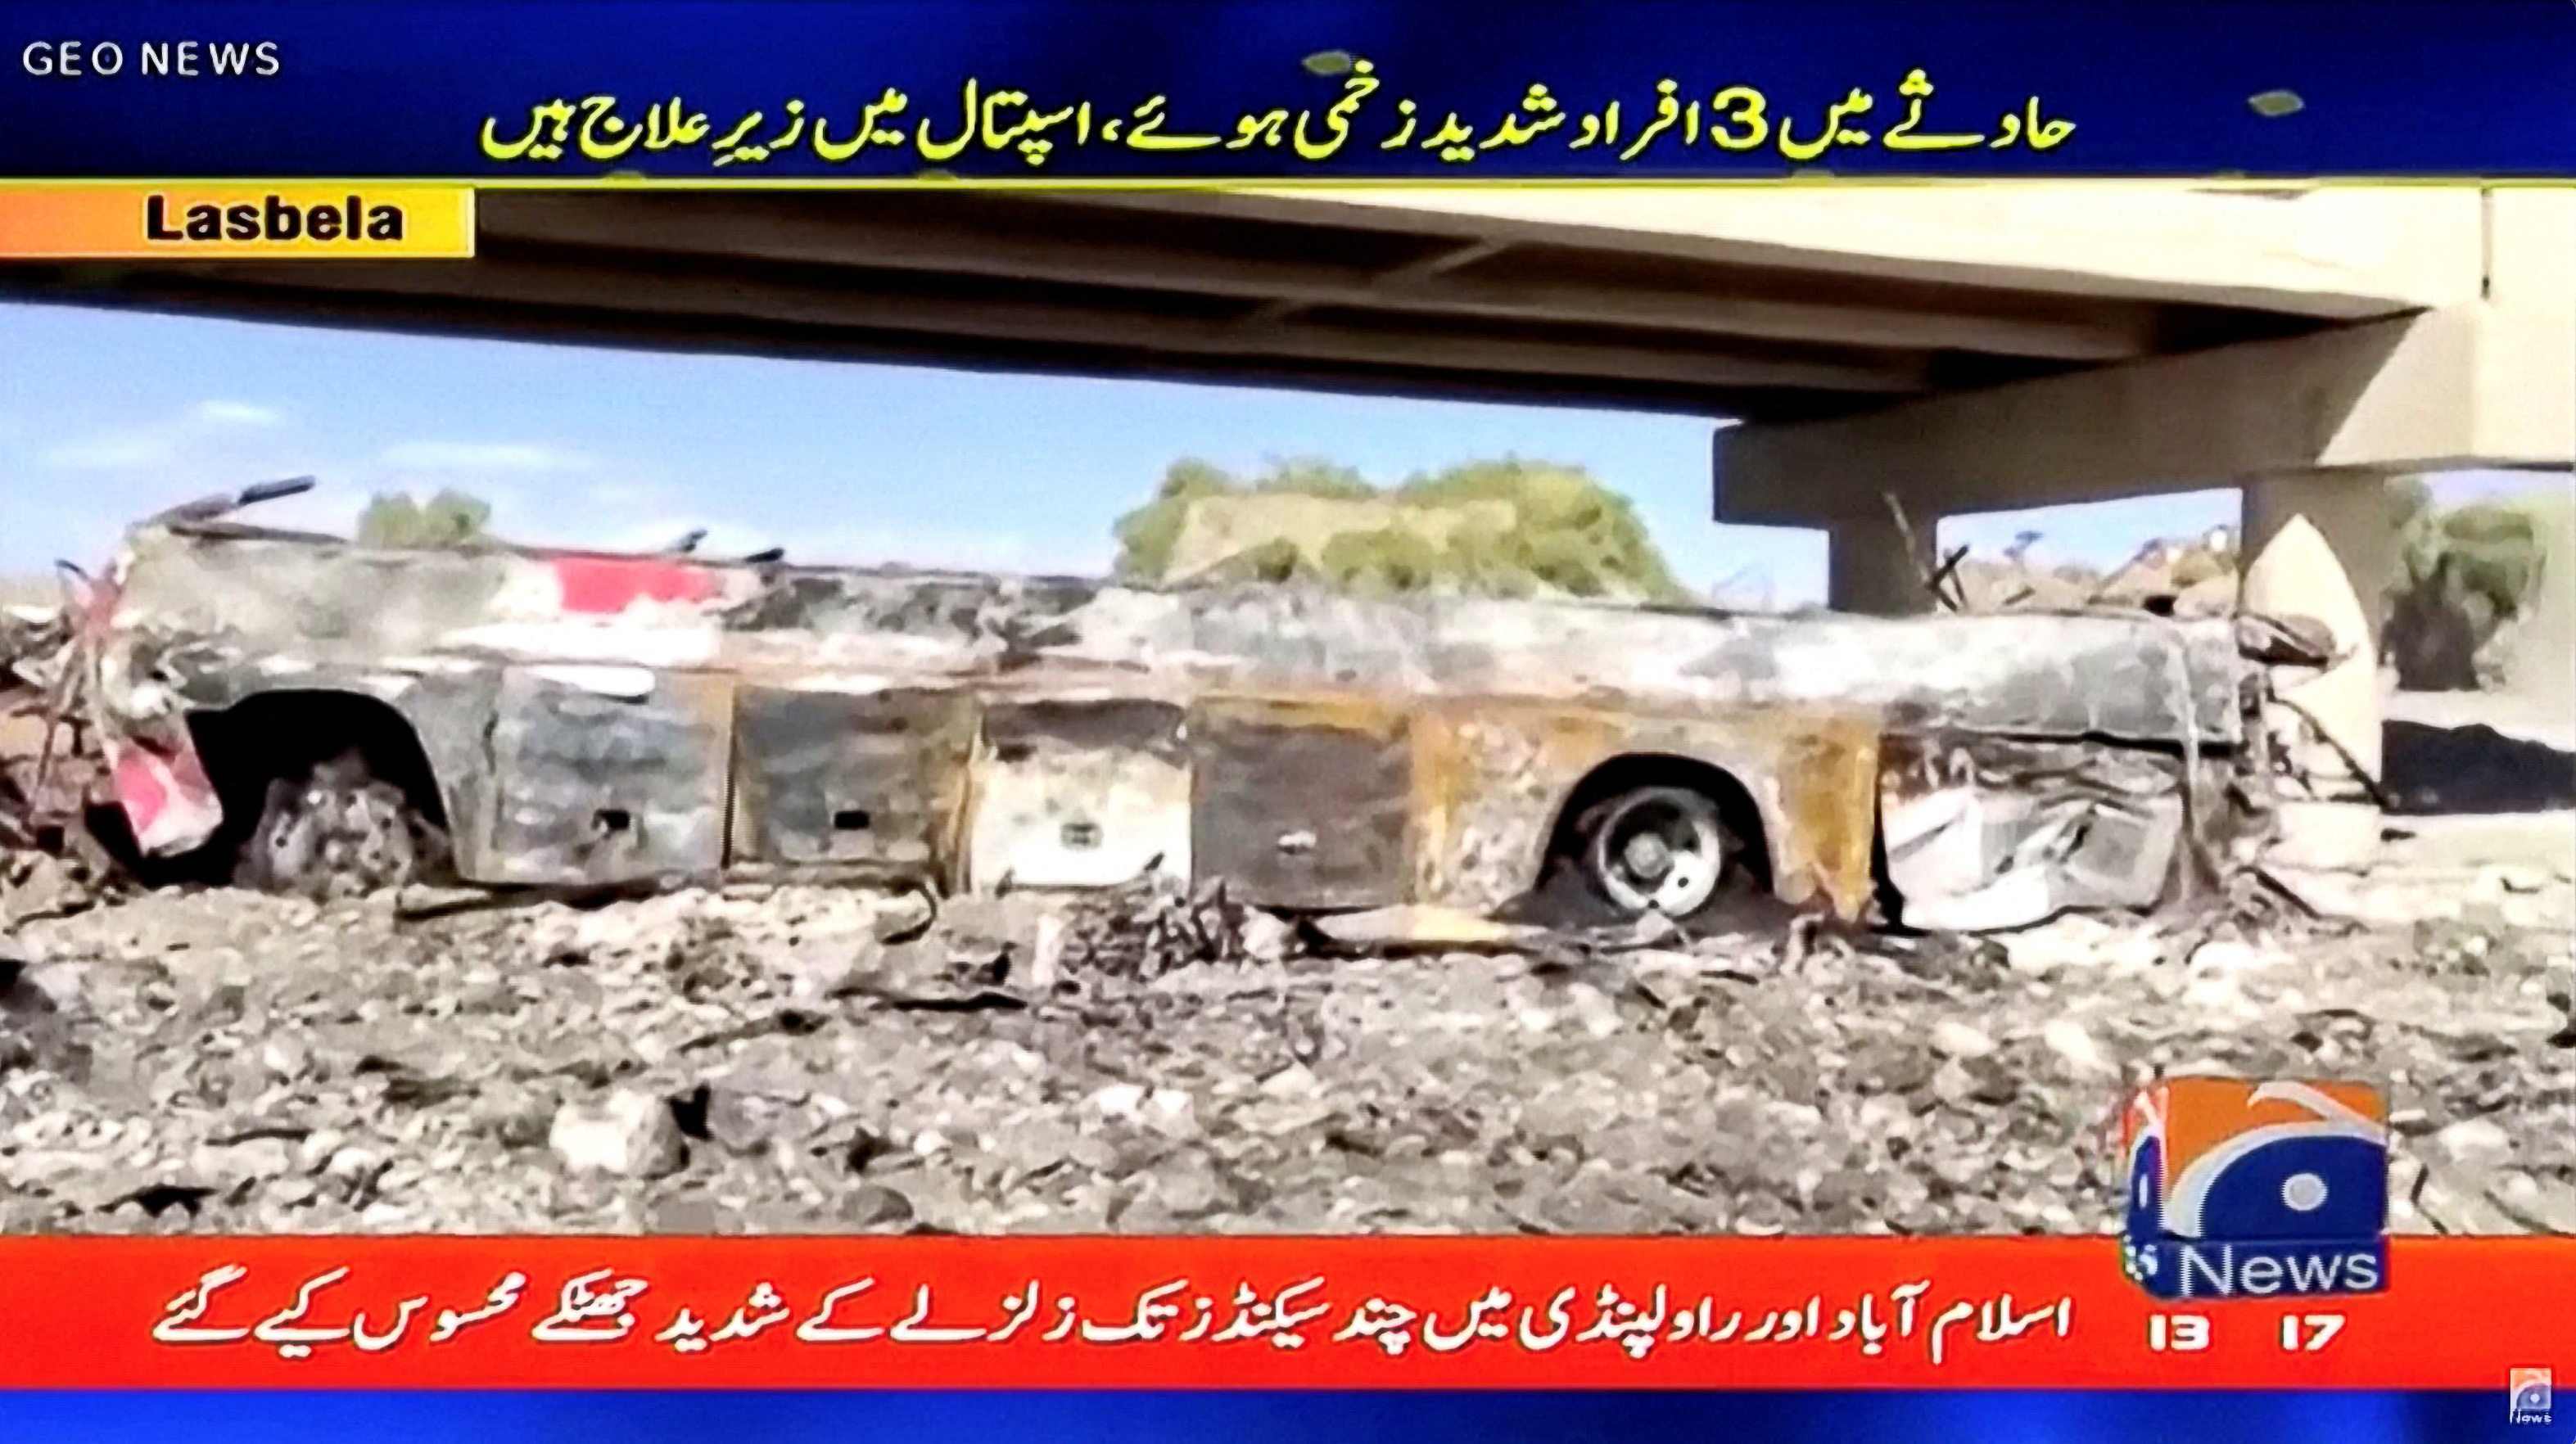 Una cadena muestra cómo quedó el bus tras la caída y el incendio (Geo TV)